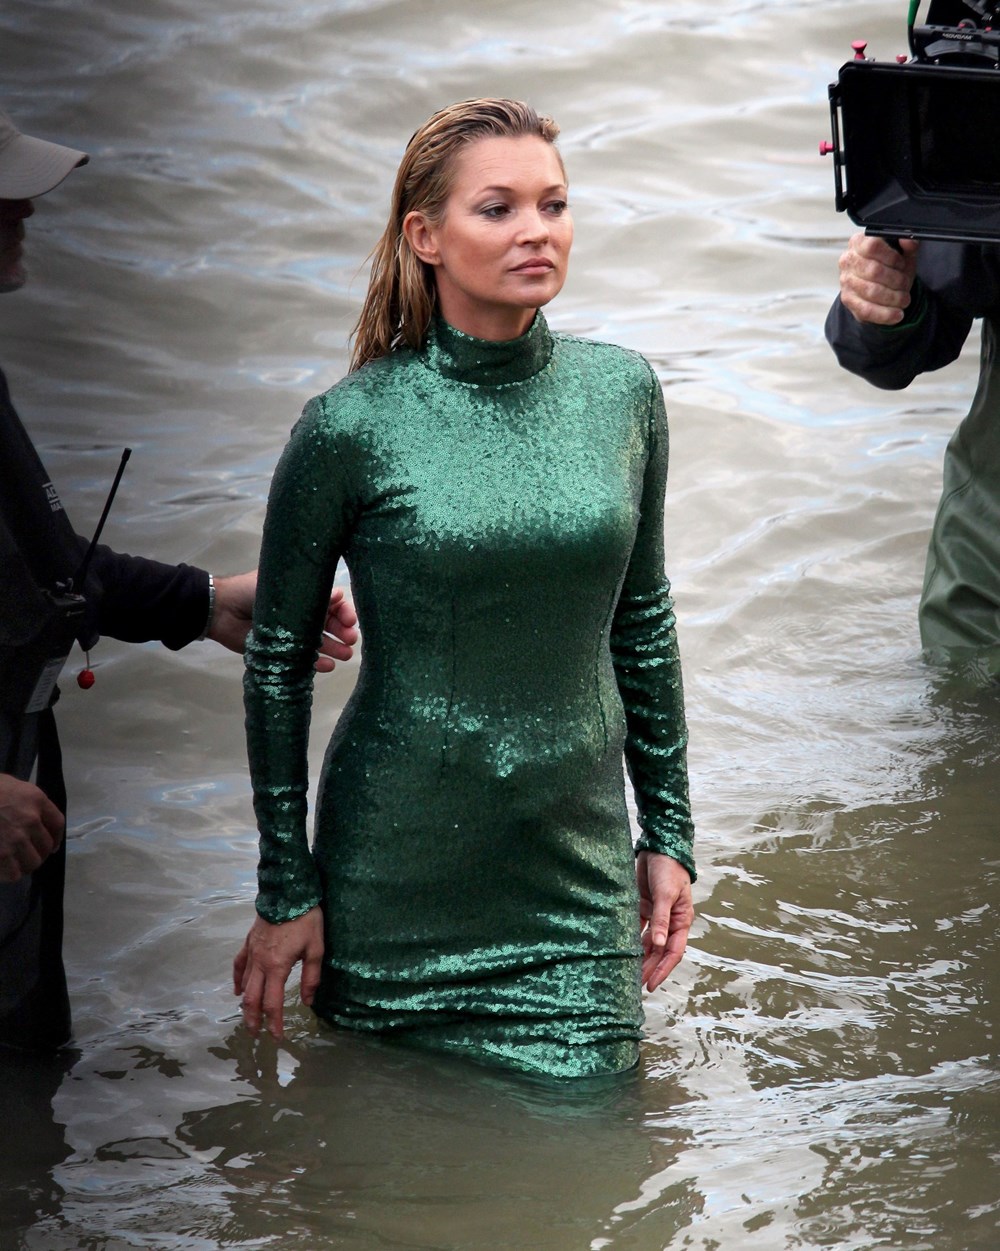 Купалась в платье. Кейт Мосс в зеленом платье в море. Кейт Мосс в платье в воде. Купается в платье. Одежда в воде.